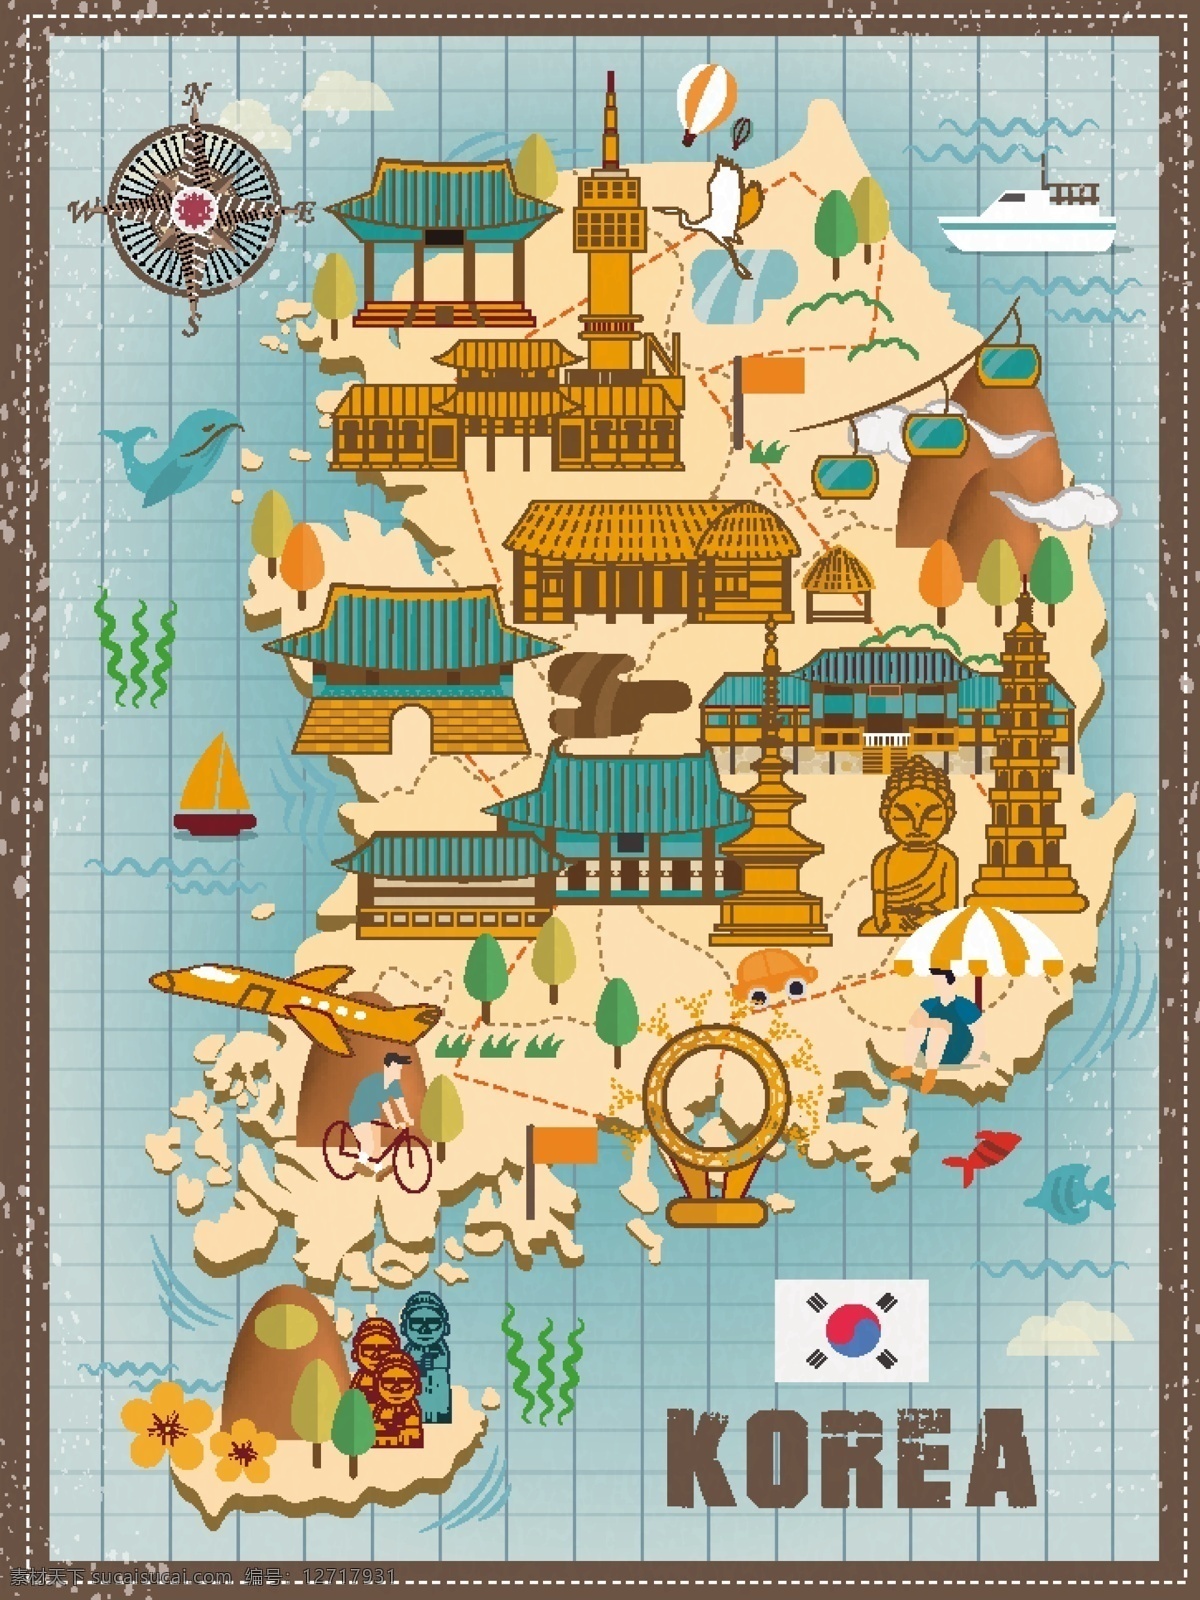 韩国 卡通 地图 矢量 矢量素材 背景素材 设计素材